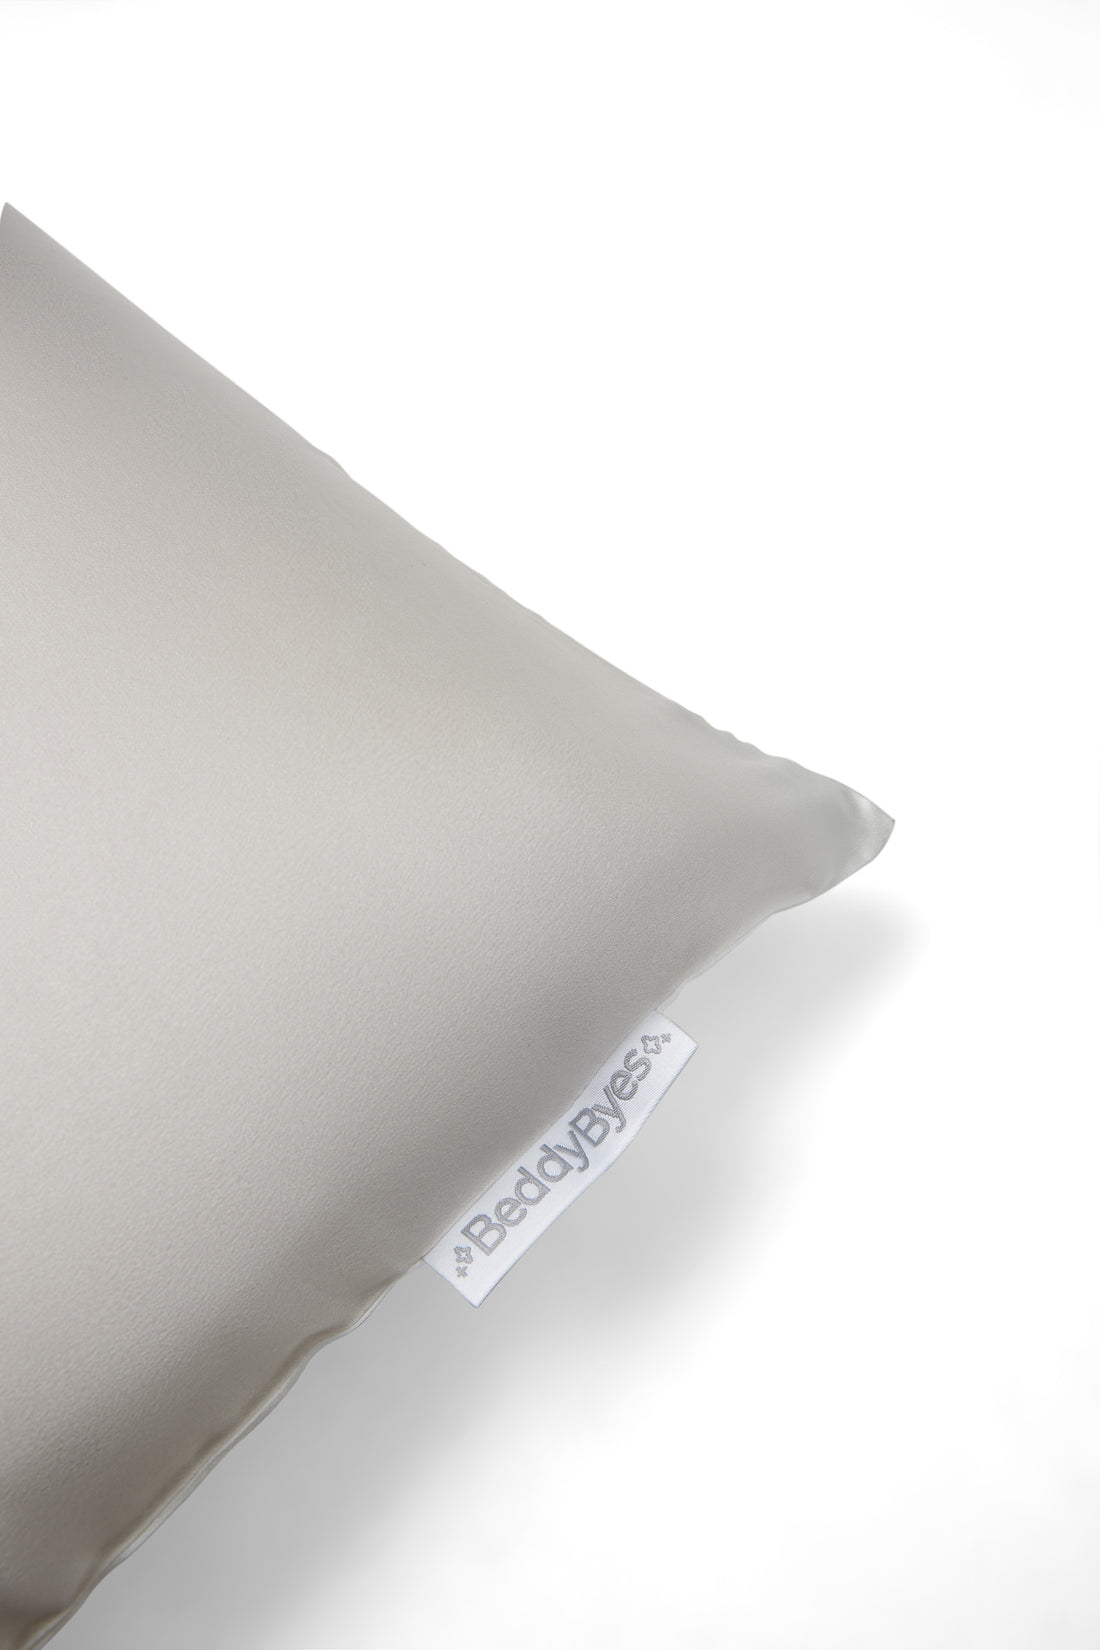 beddybyes blush silver grey Queen Pillowcase logo label